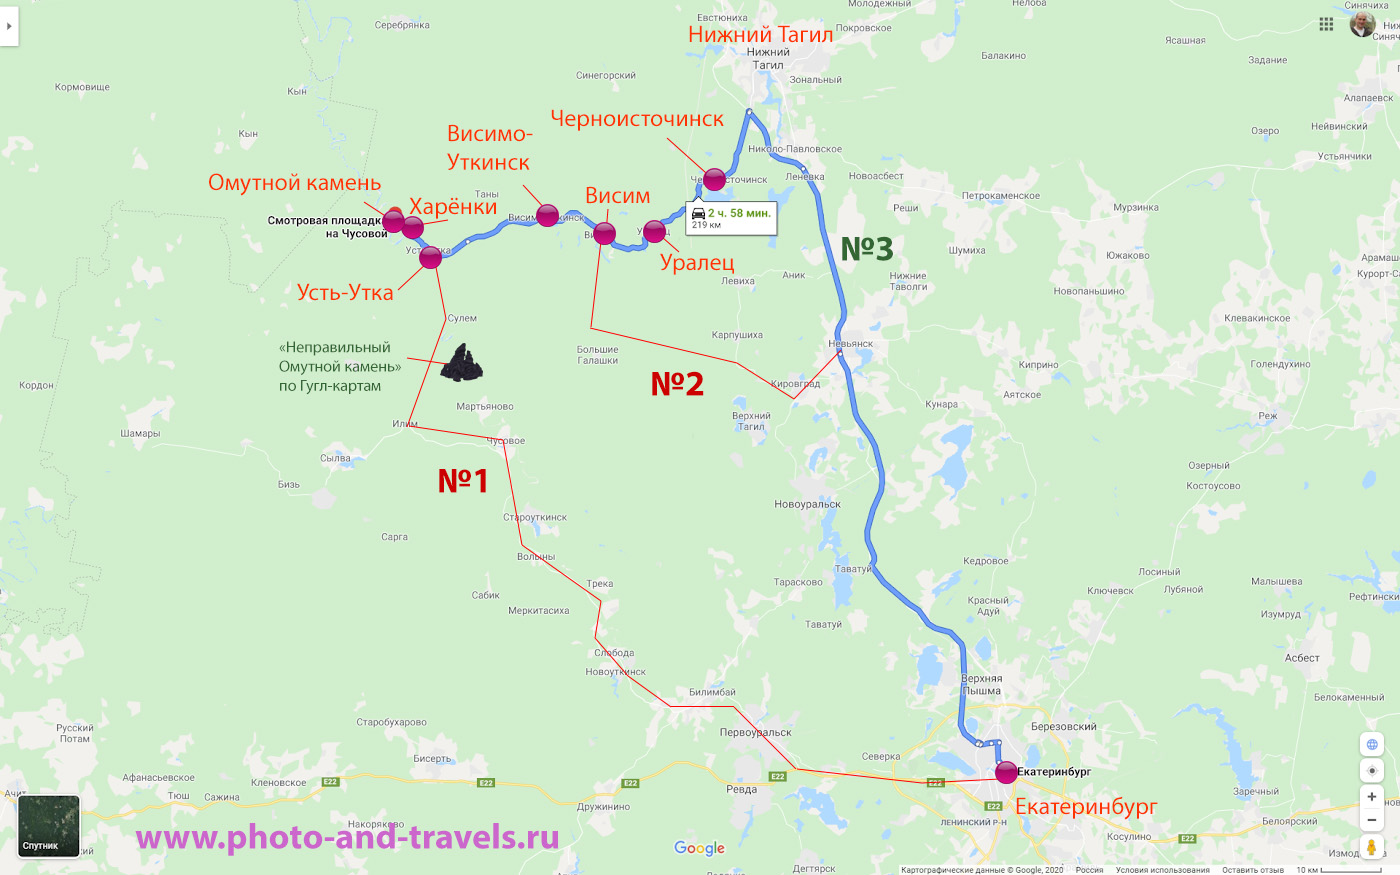 22. Карта маршрута с описанием, как добраться к Висимо-Уткинскому водопаду и Омутному камню. Приведу координаты GPS по маршруту: